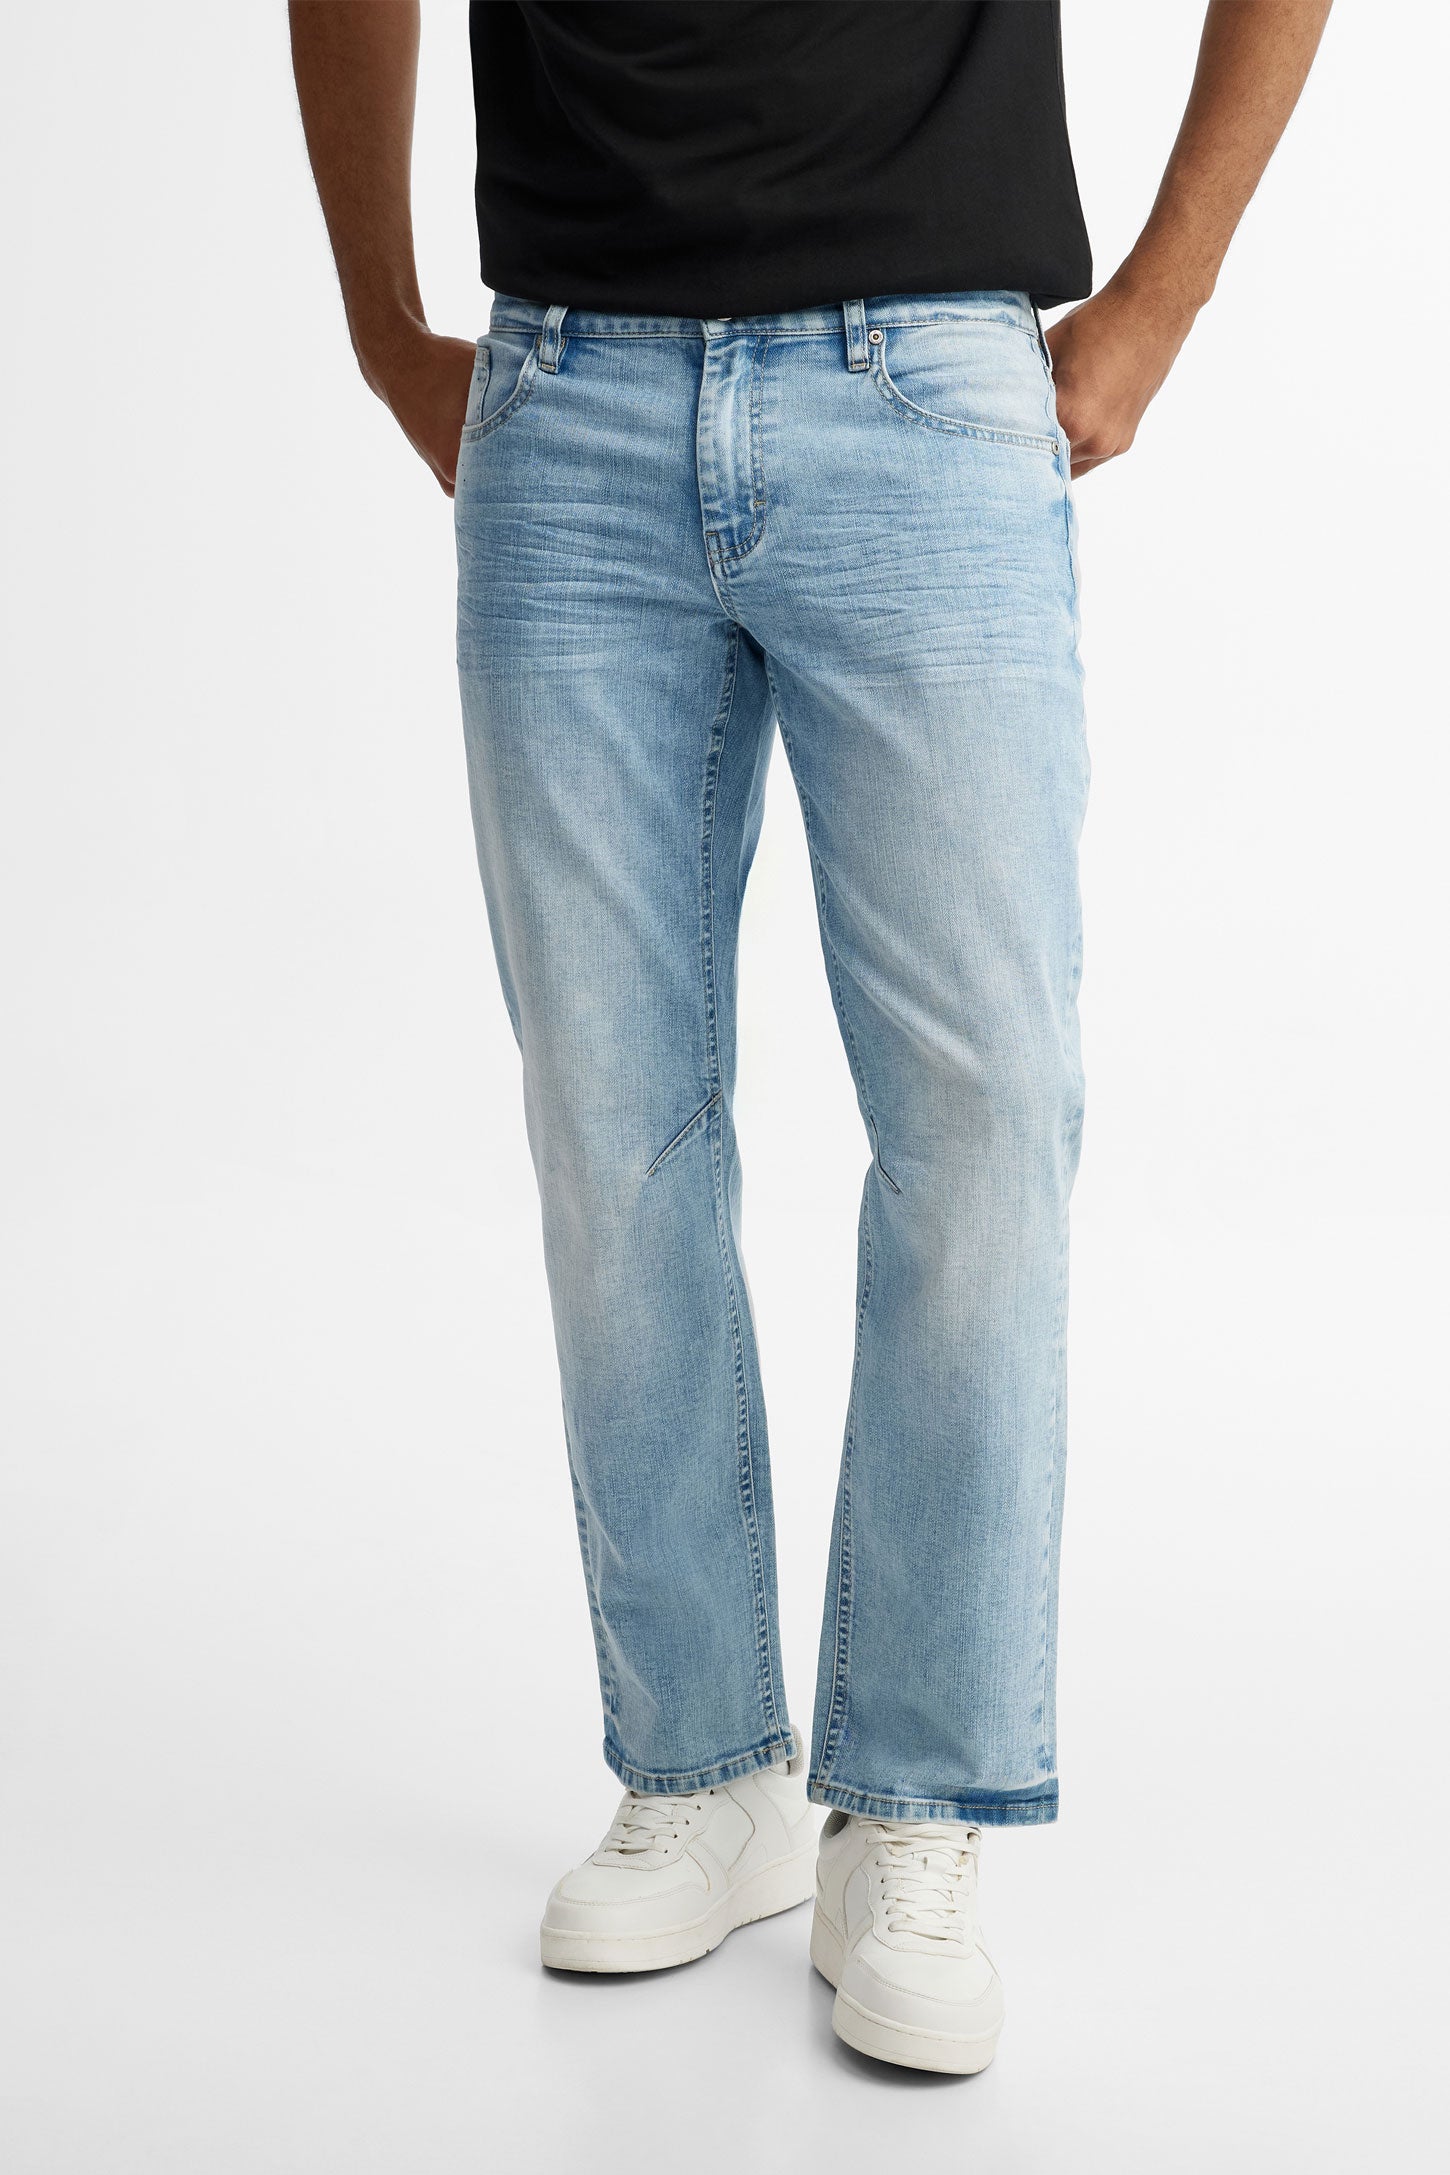 Jeans 5 poches délavé jambe droite - Homme && BLEU PALE